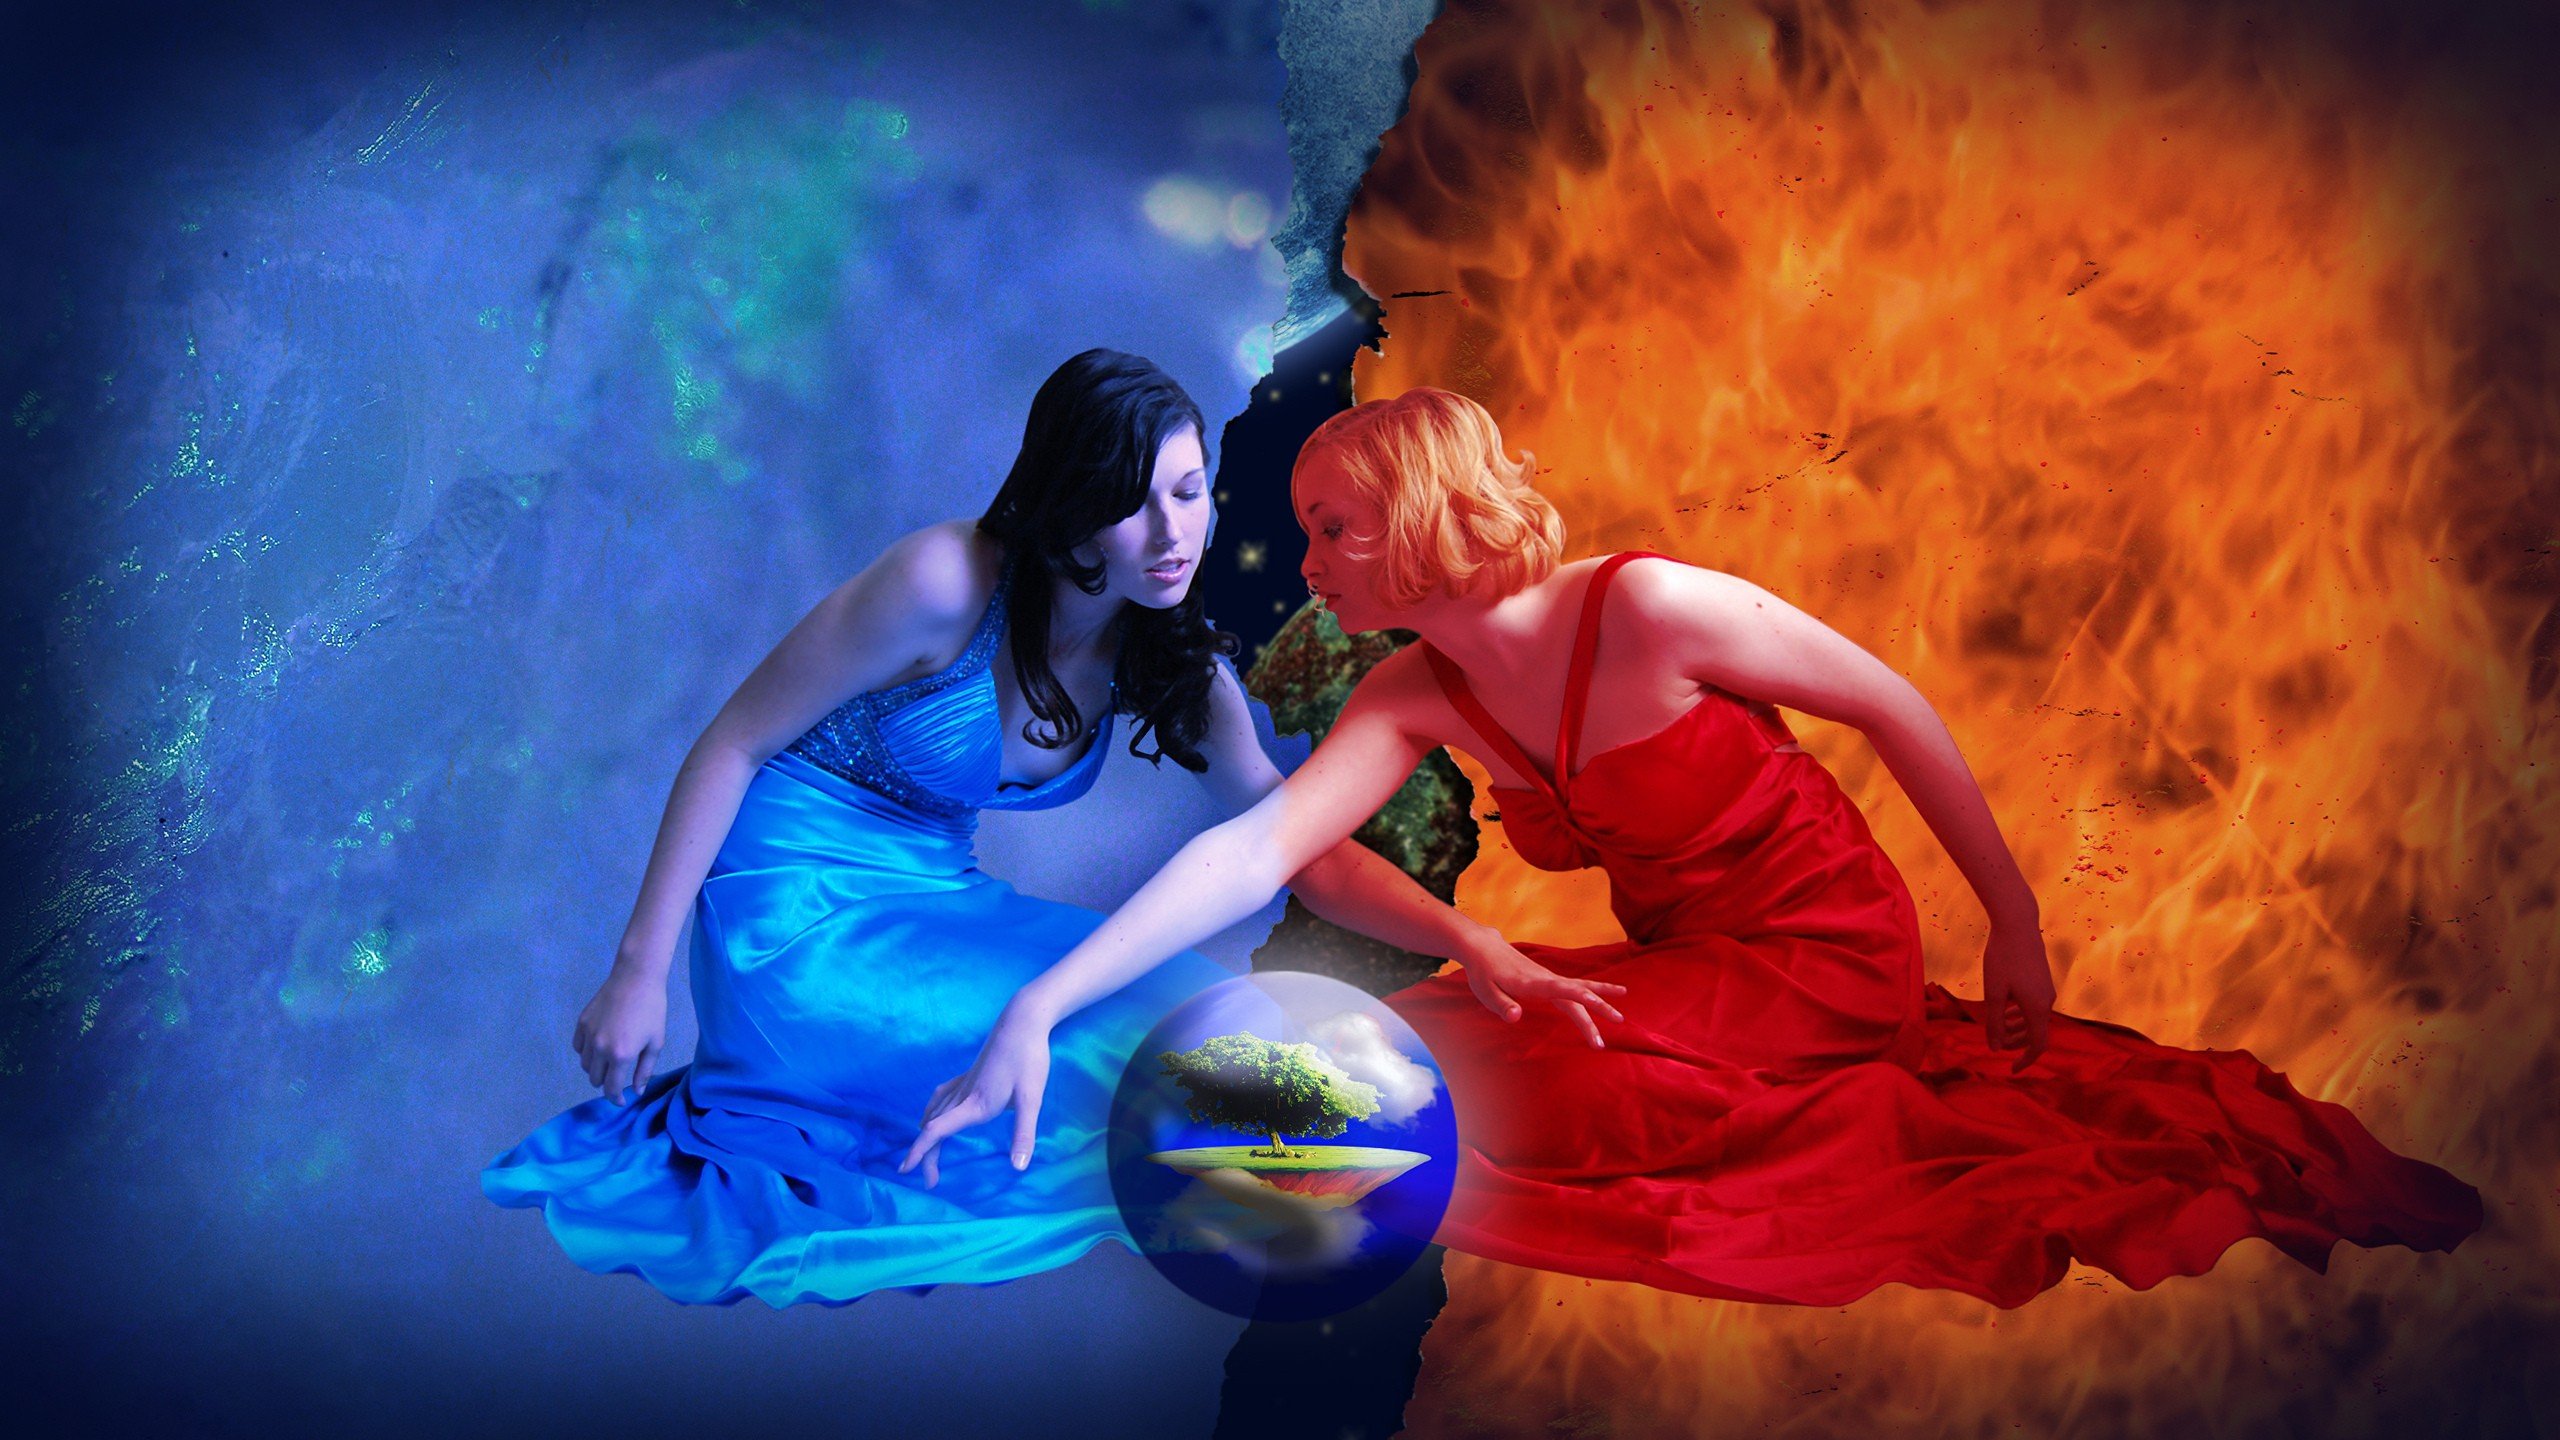 women witch water fire elements sphere world digital art wallpaper